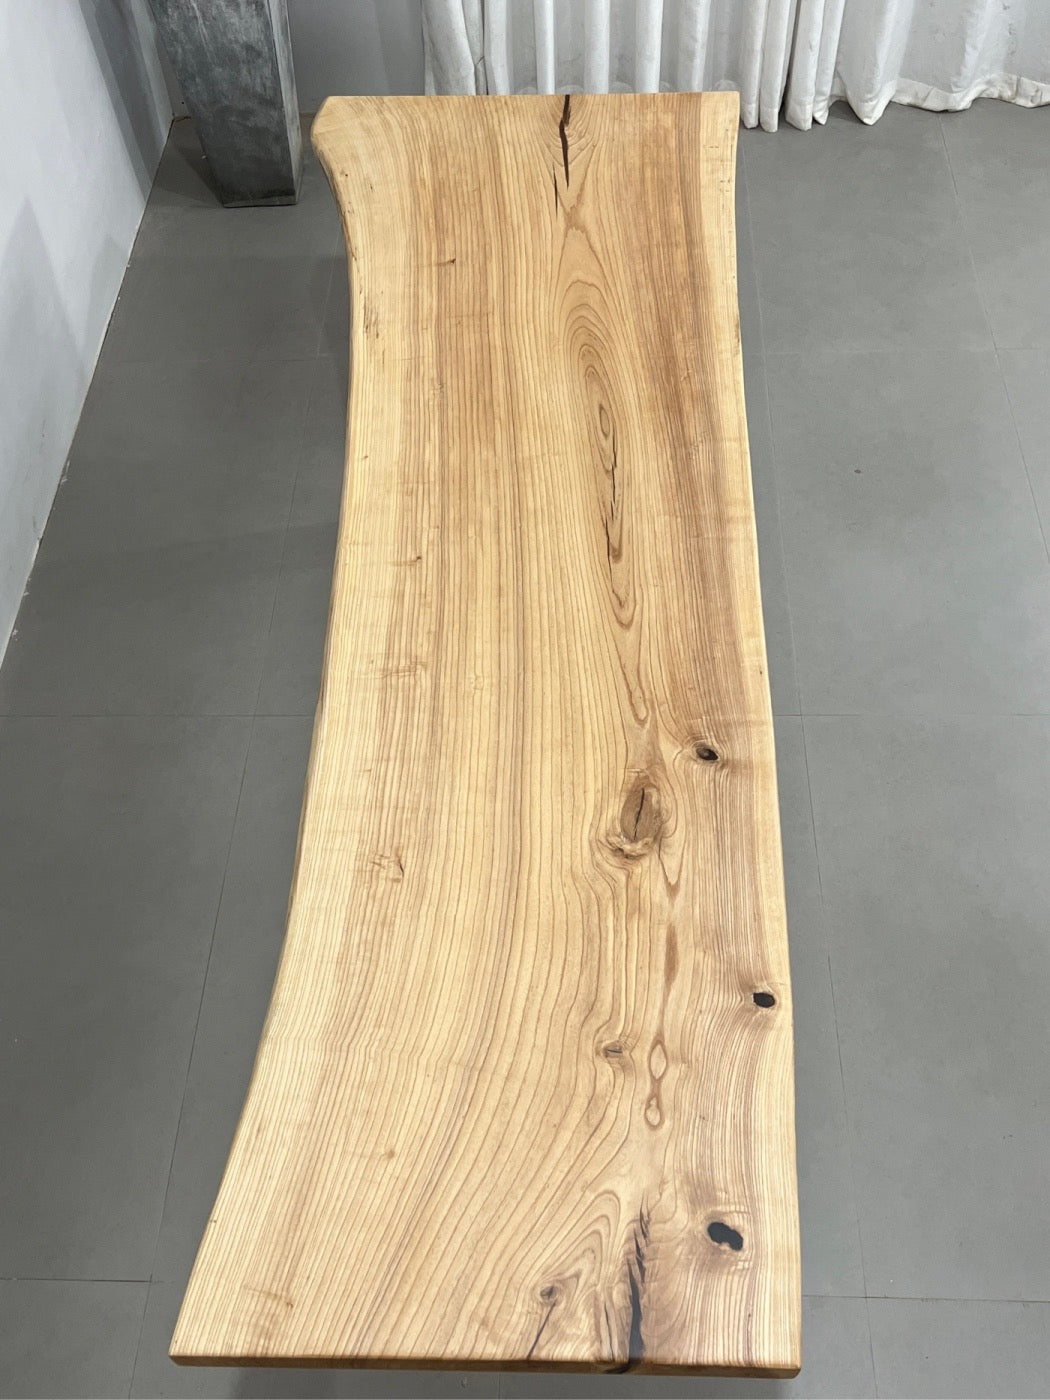 white slab, light color slab, light colour slab, ash wood slab, ash wood table